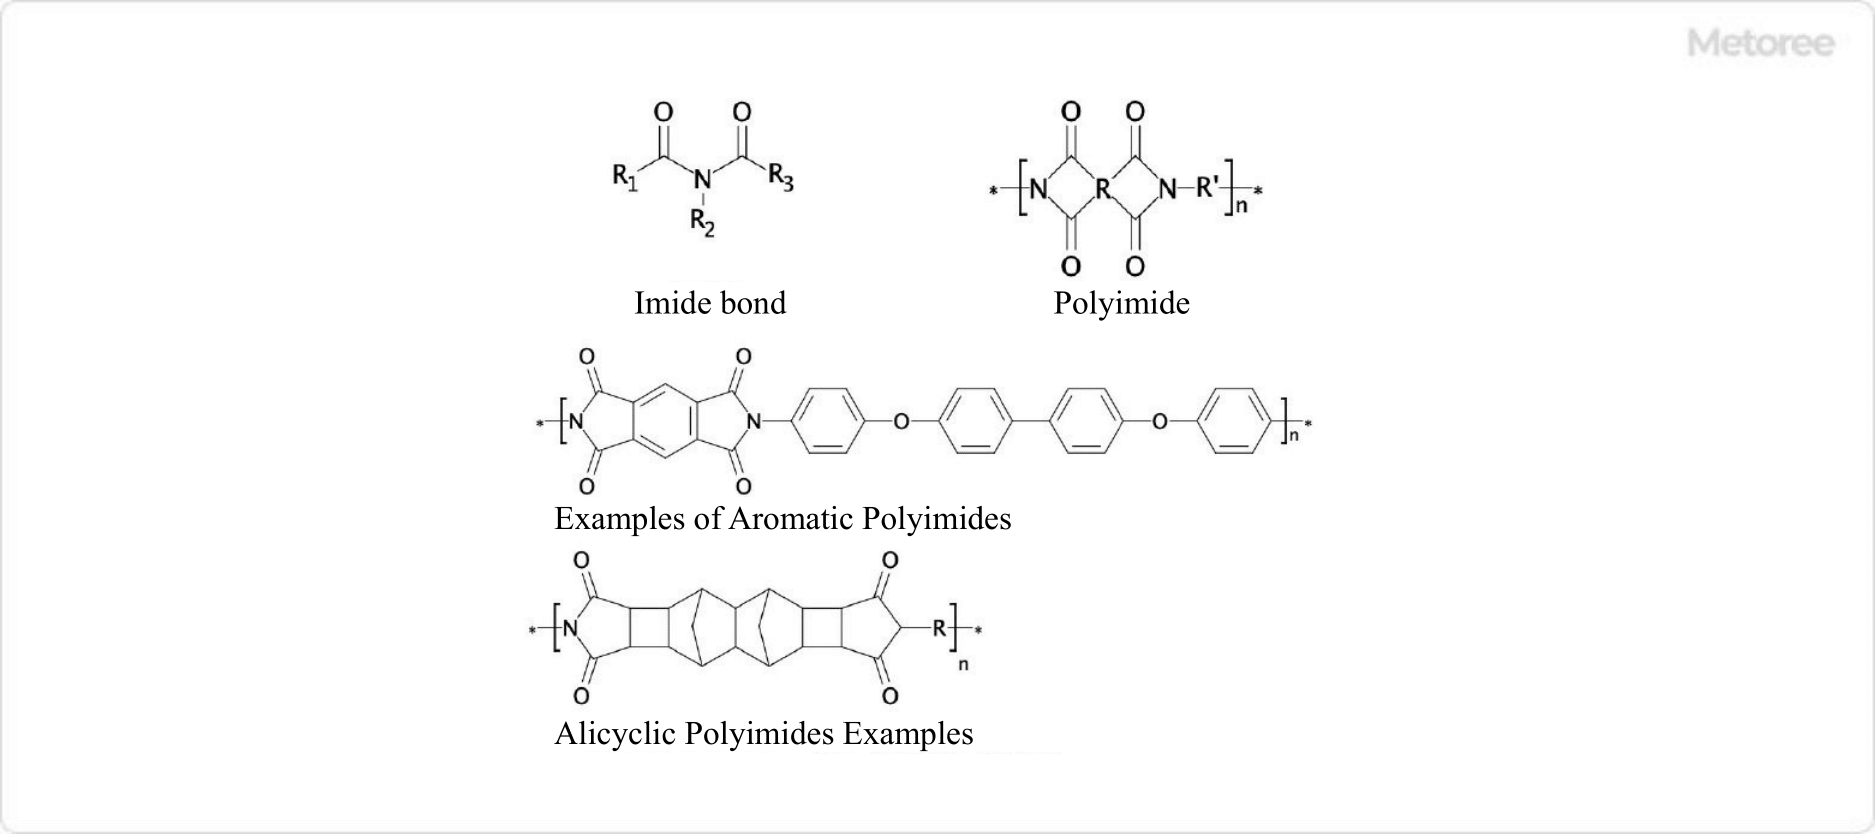 Figure 2. Imide bonding and polyimide